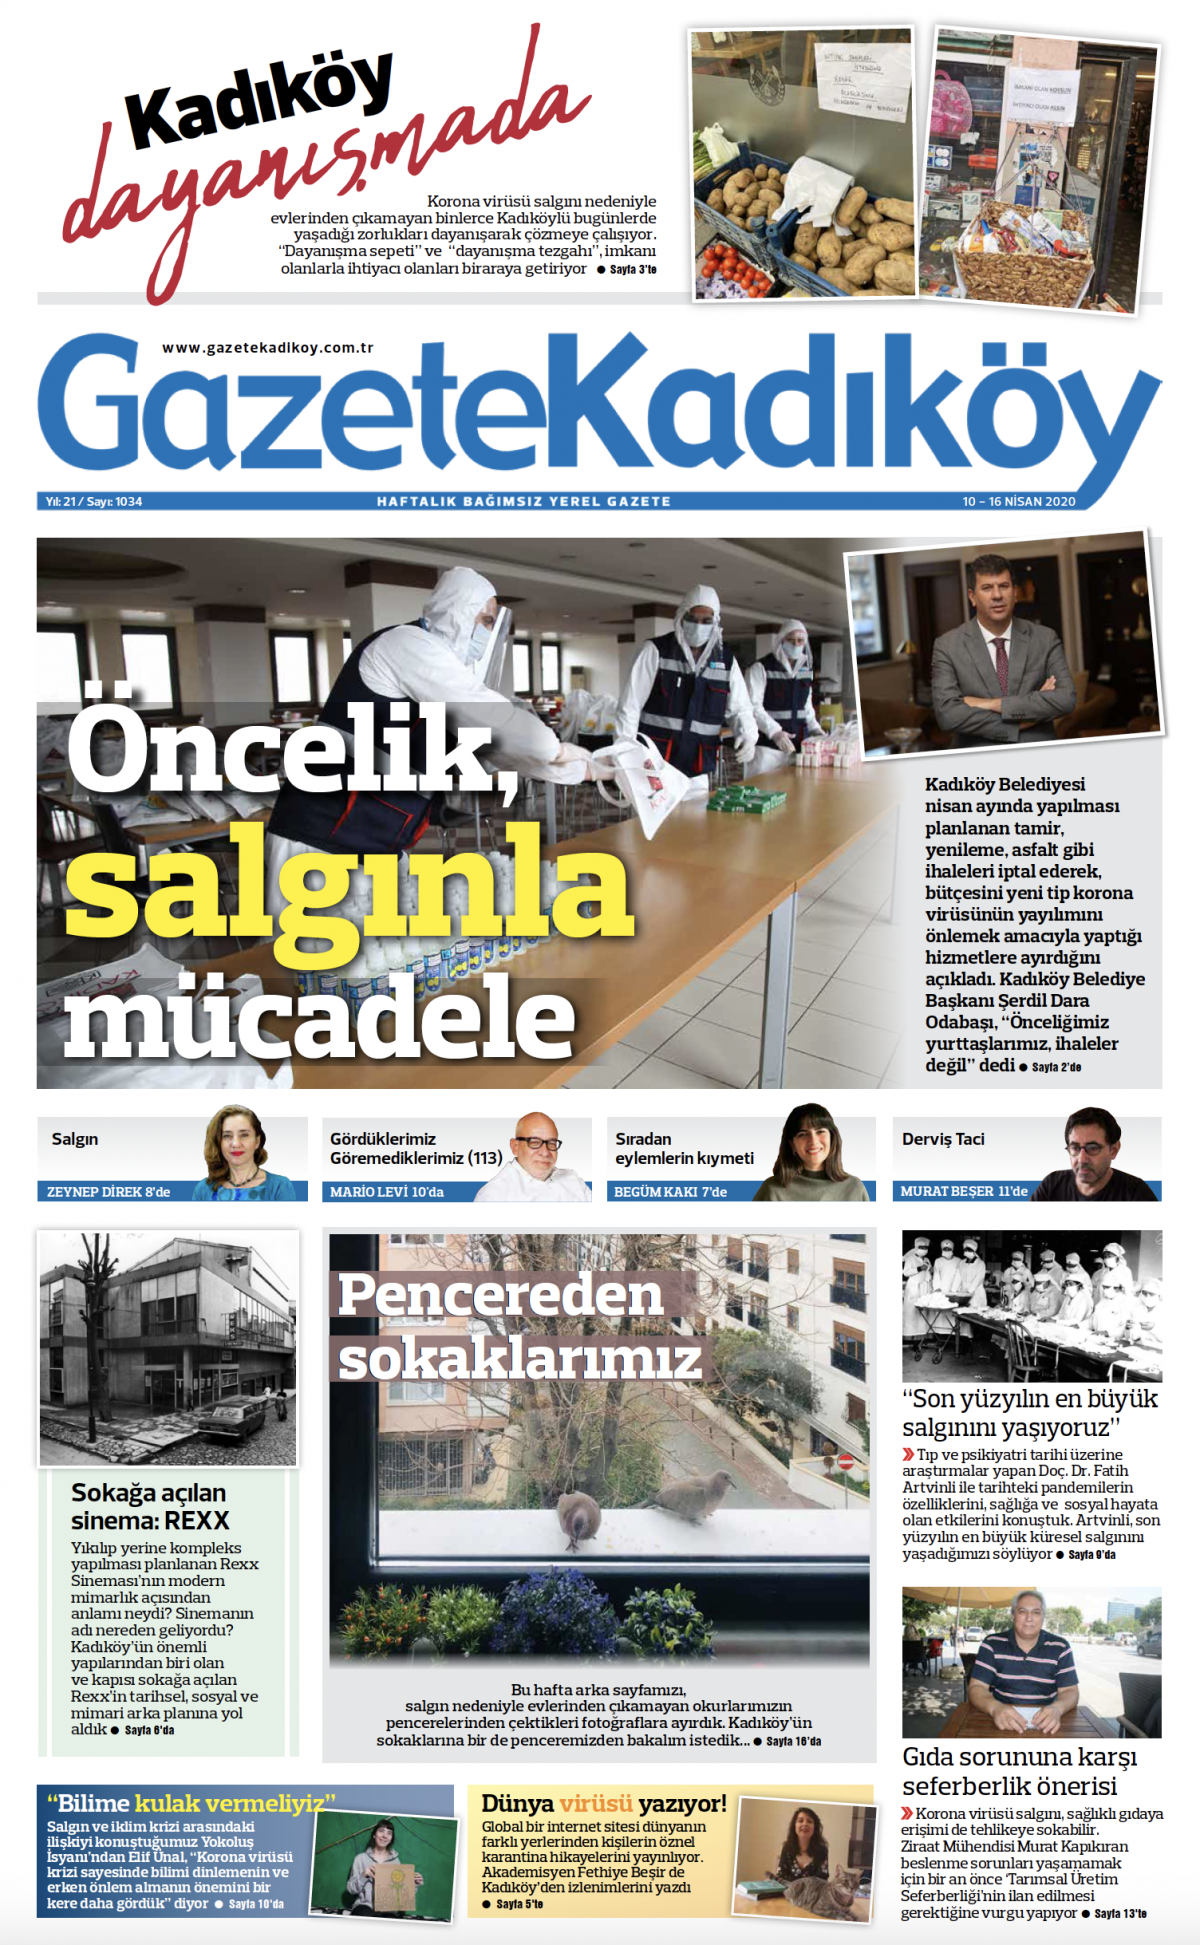 Gazete Kadıköy - 1034. Sayı